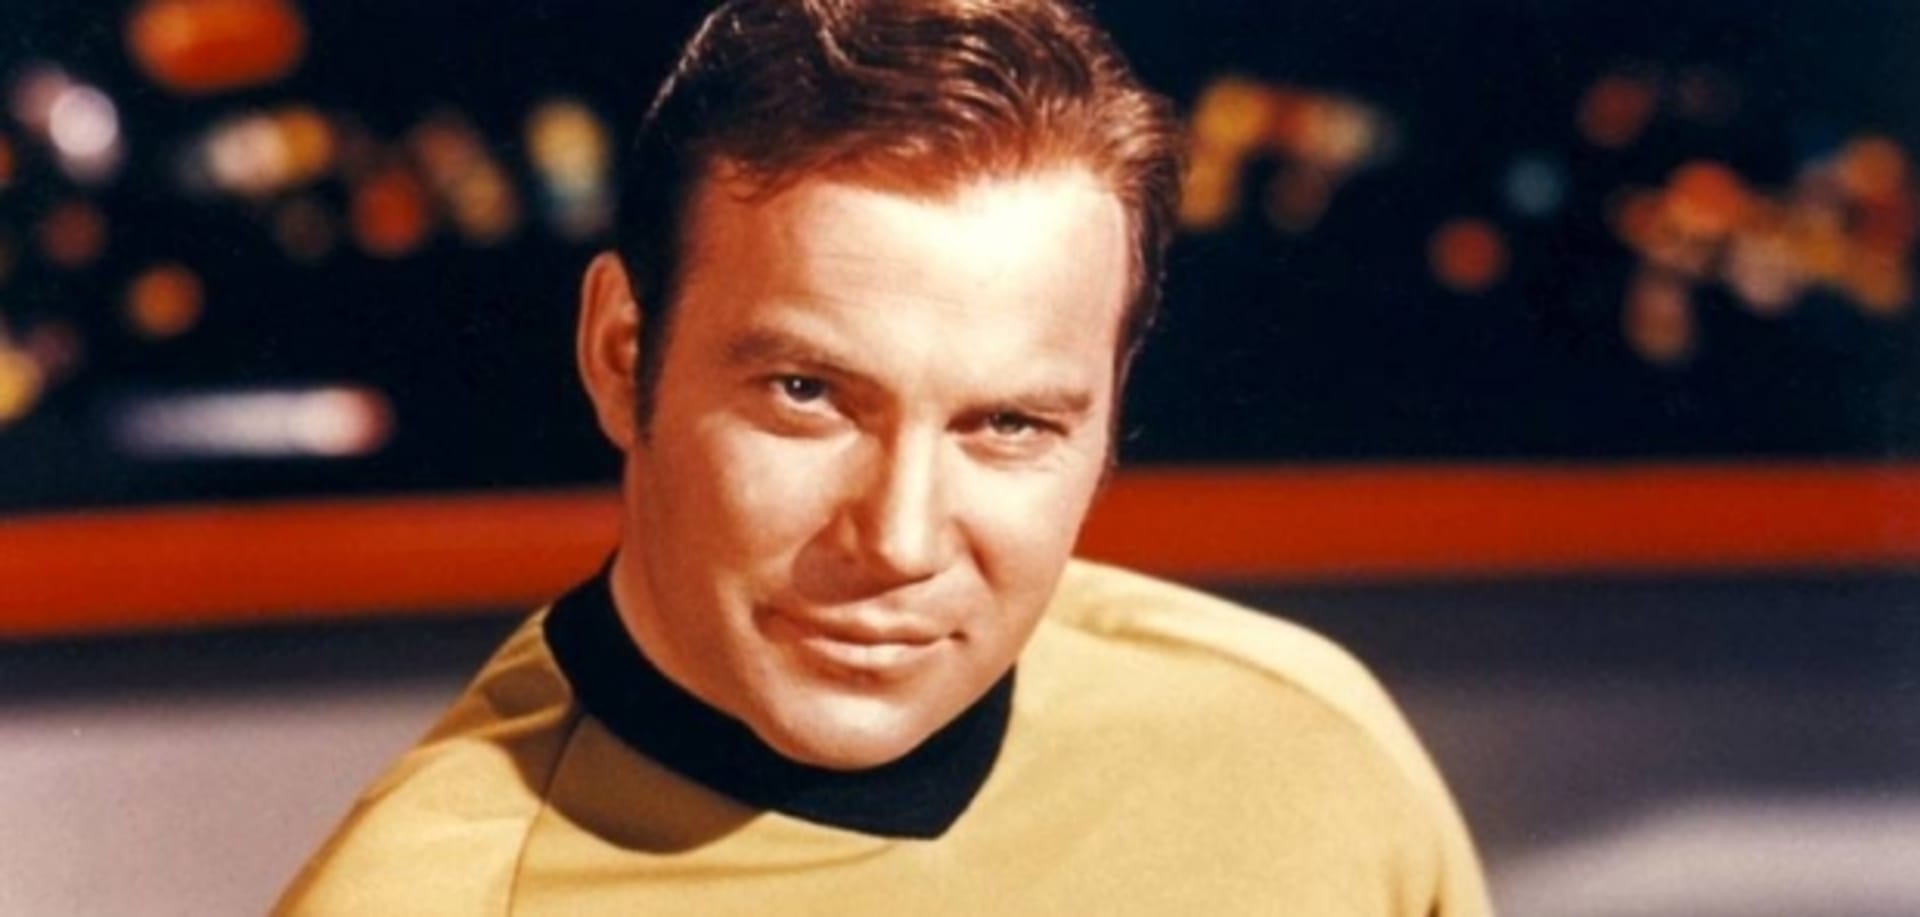 Největší idol Matěje Rupperta: kapitán Kirk